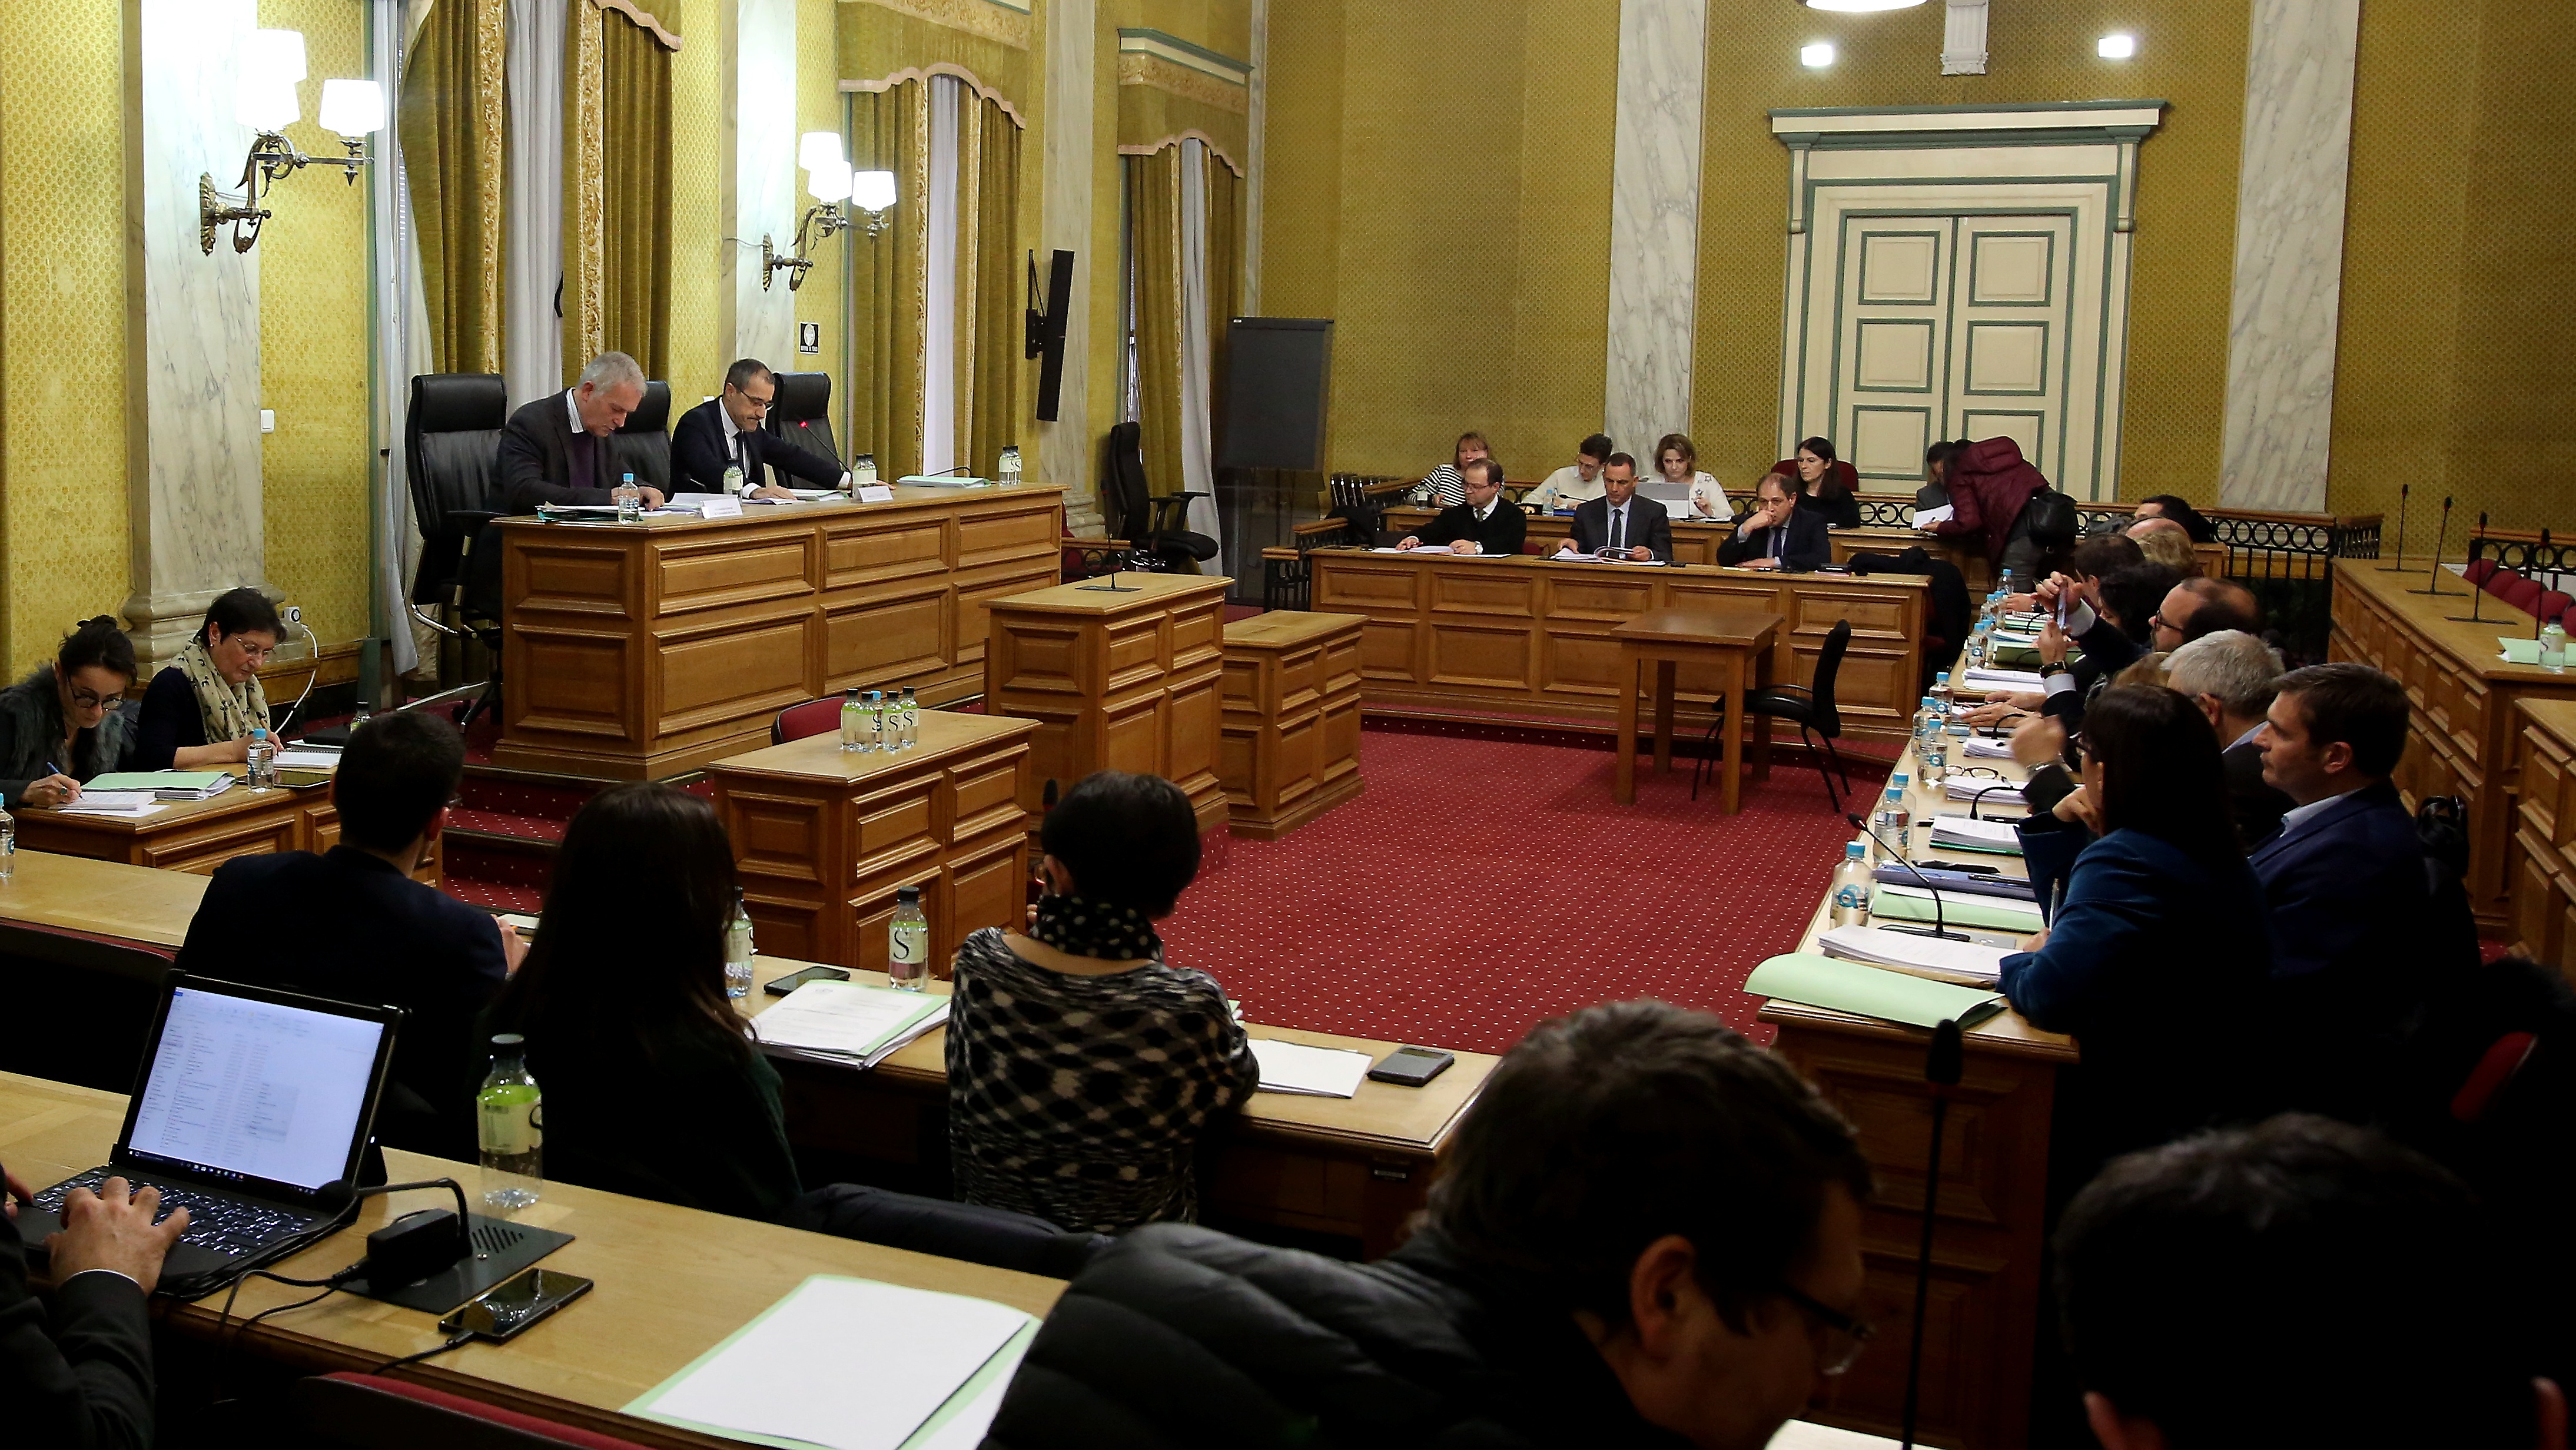 Commission permanente de l’Assemblée de Corse : Elle pourrait jouer un rôle plus important…